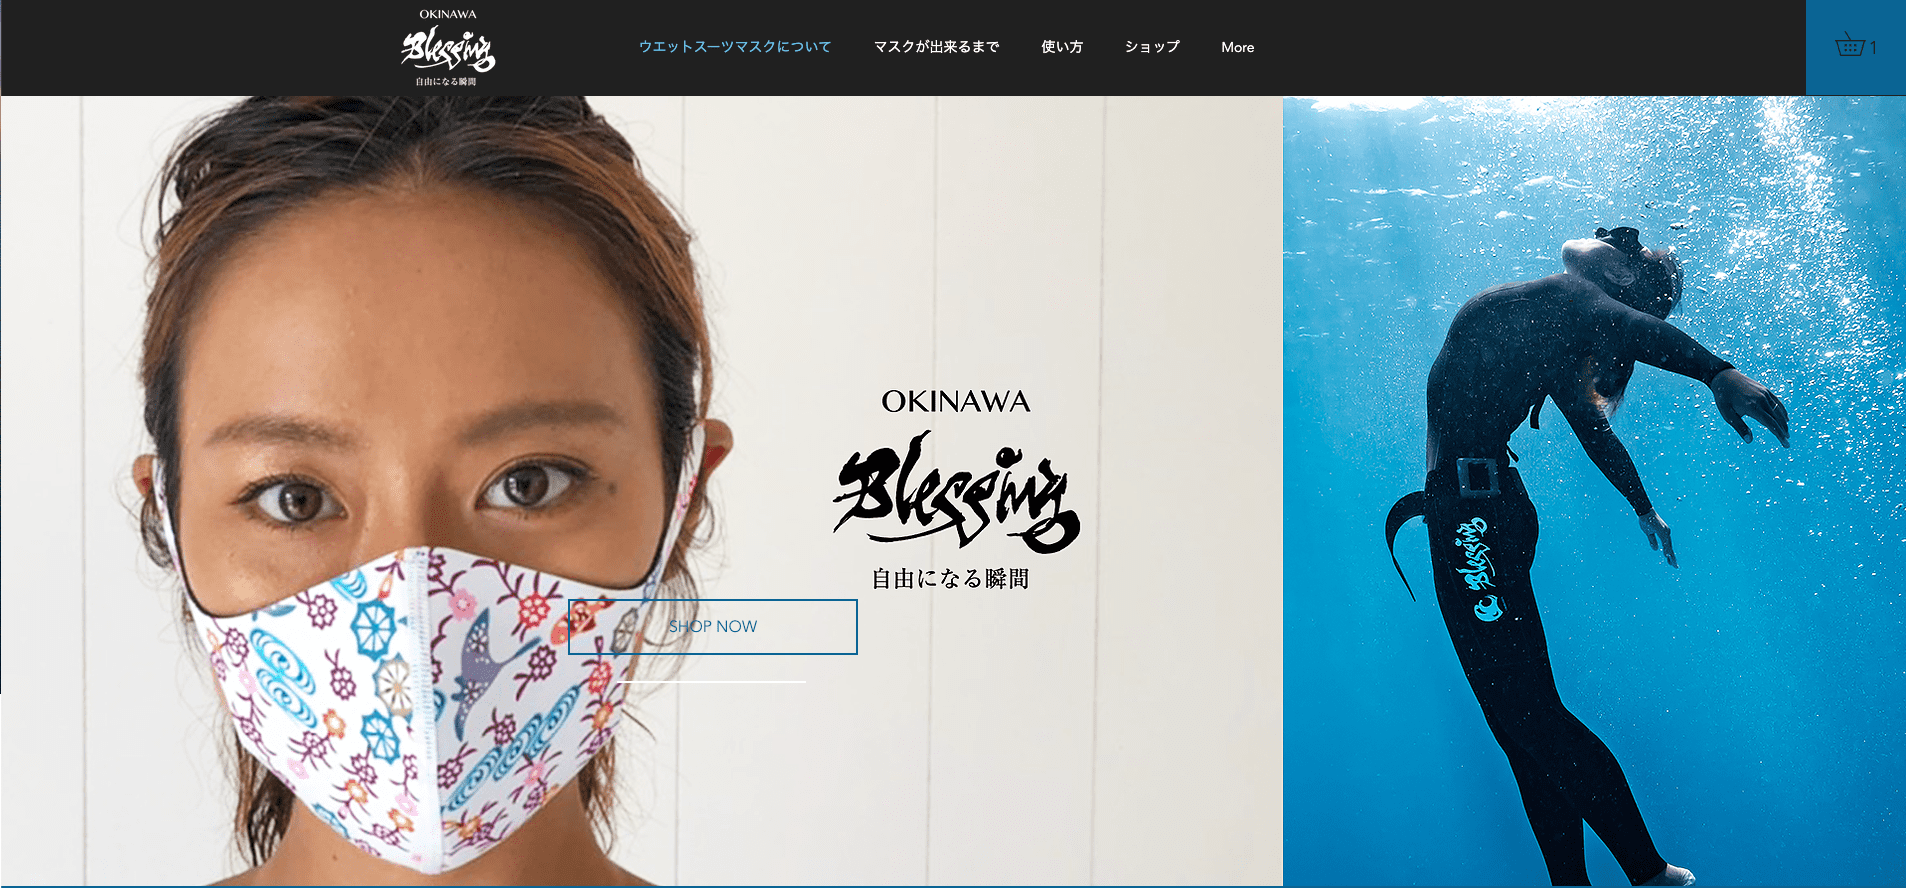 オンラインショップを開設しました Okinawa Blessing